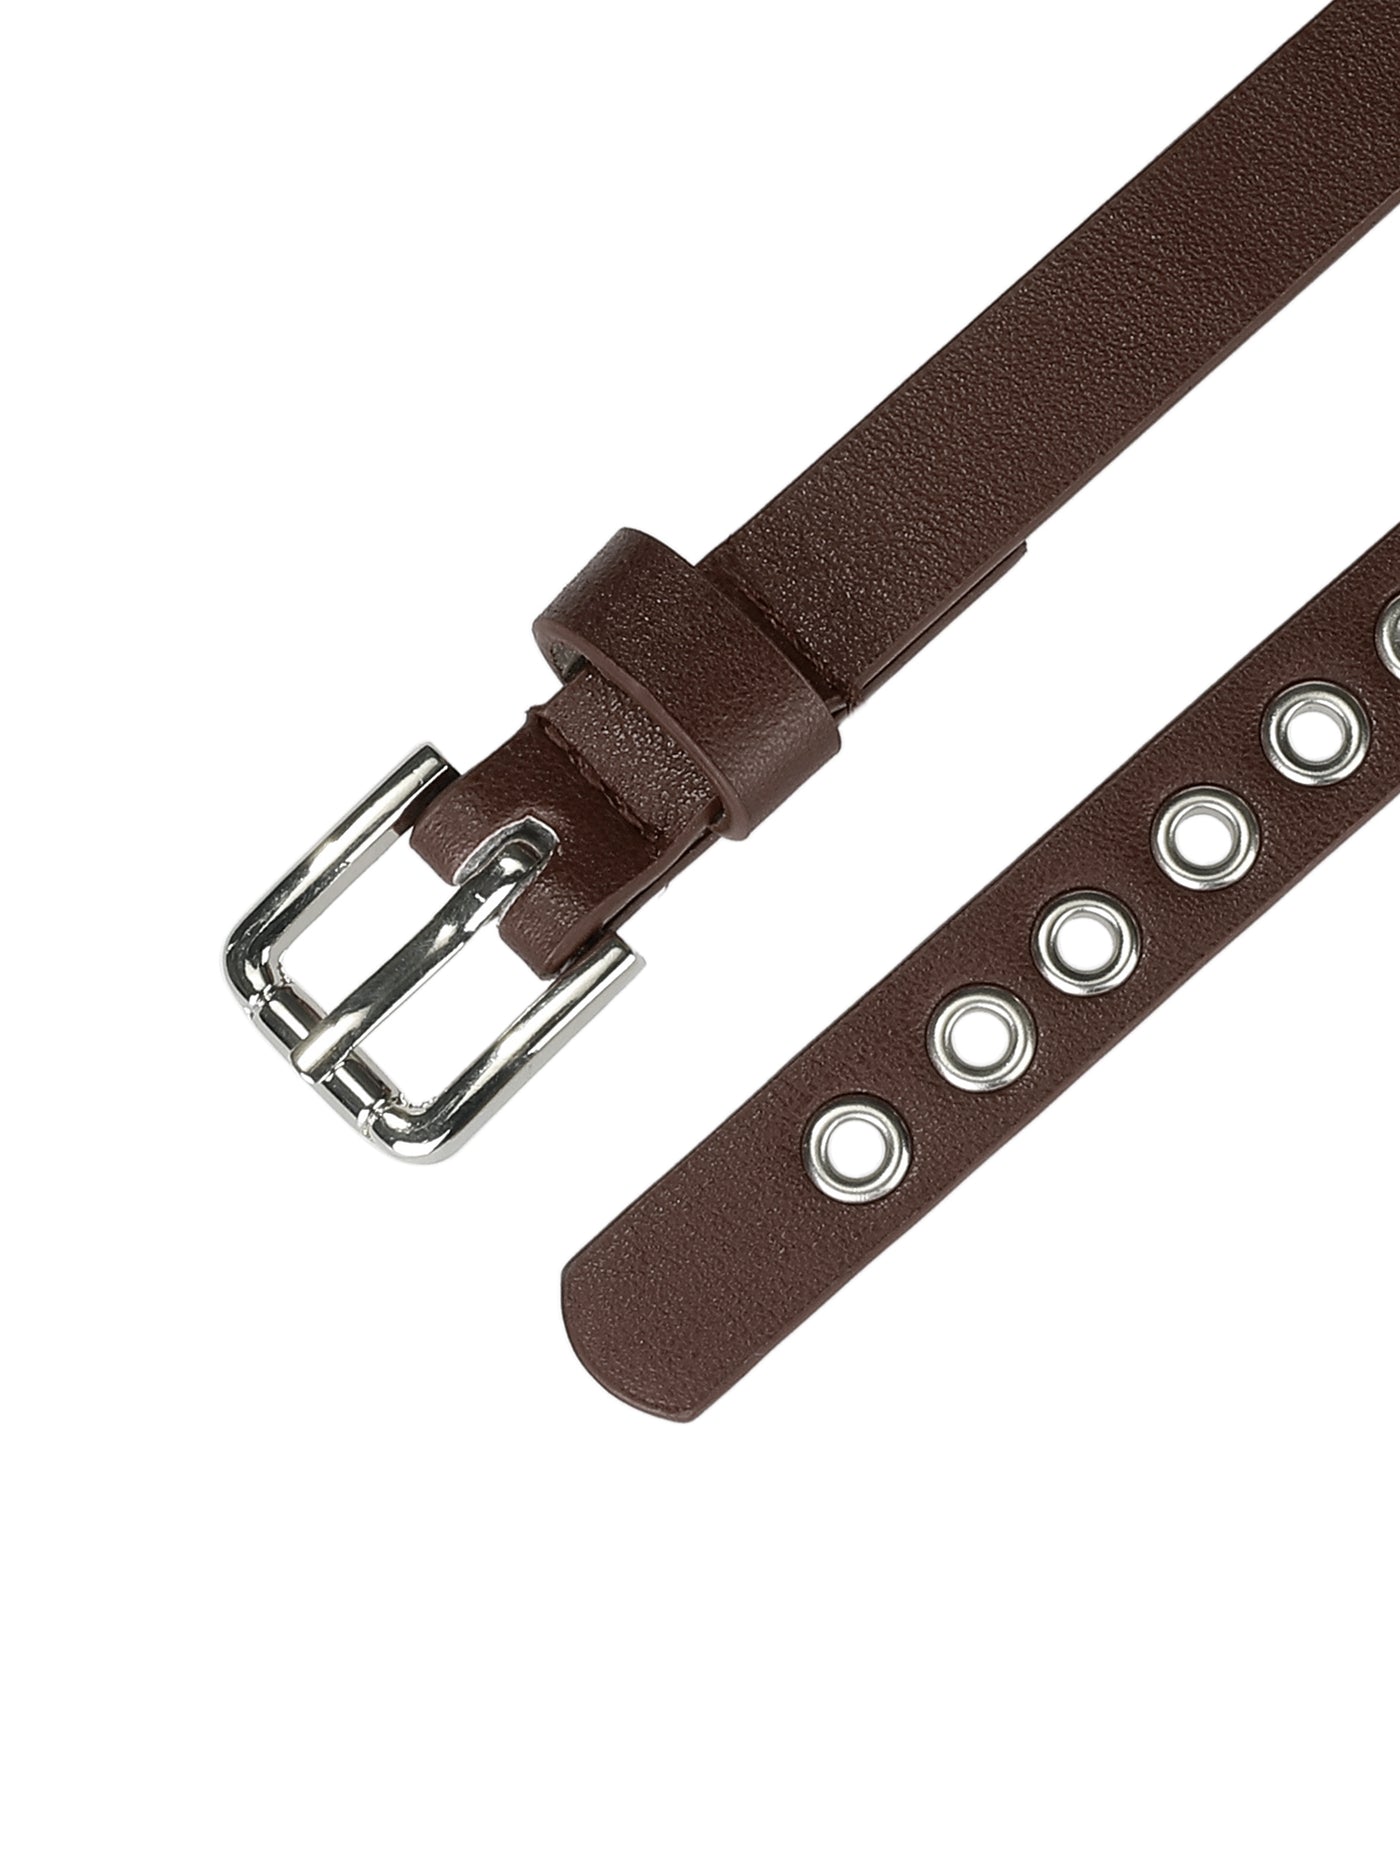 Allegra K Grommet Belt Leather Skinny Plus Size Waist Belts Punk Rock Style